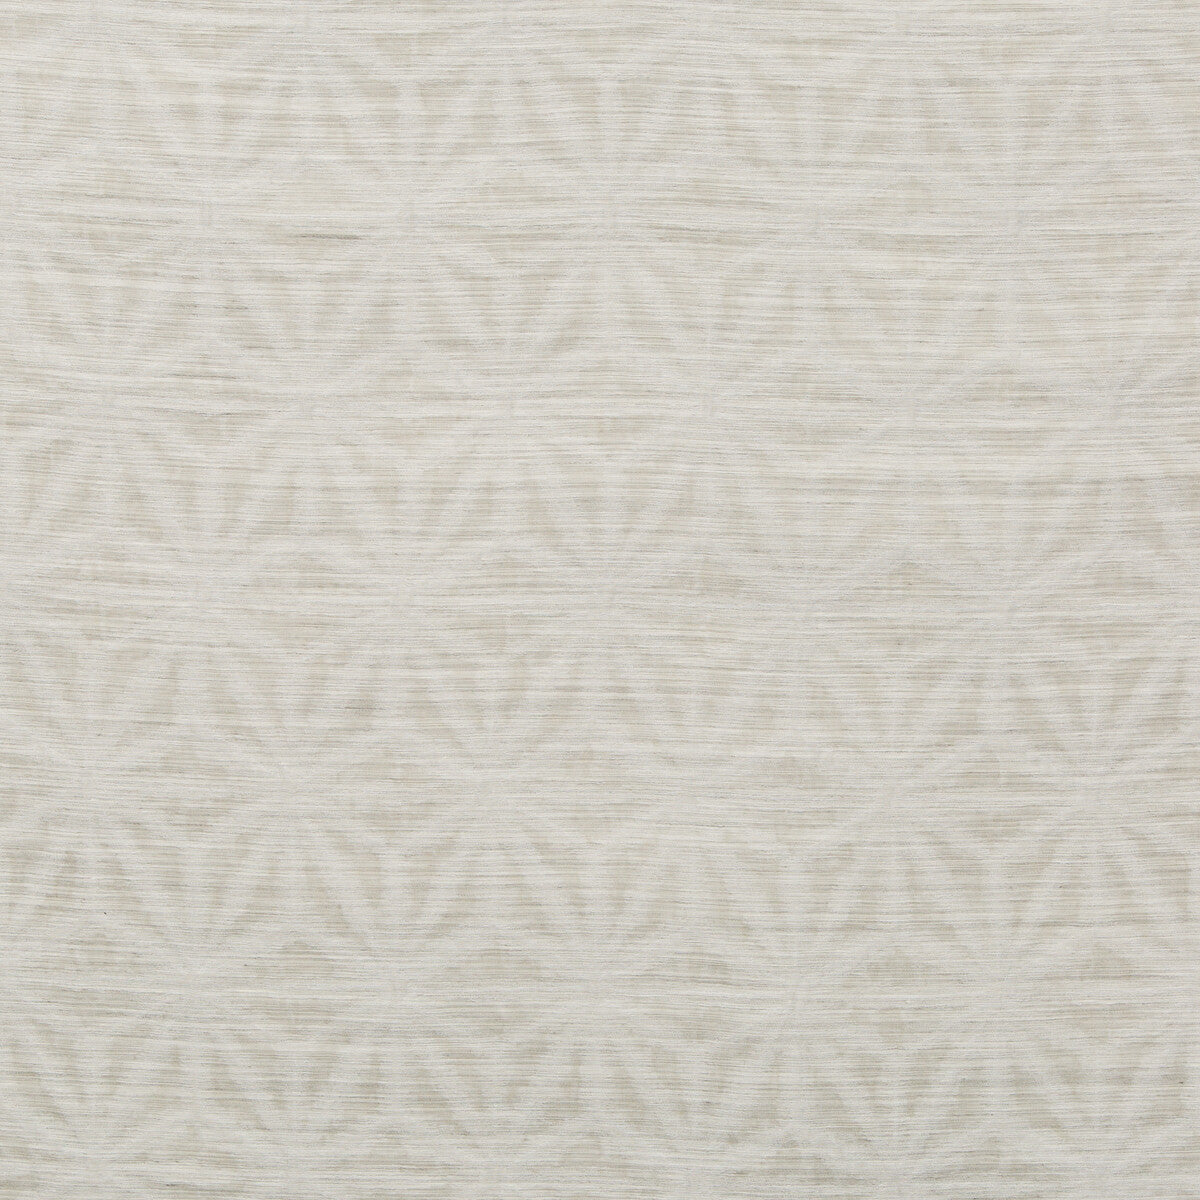 Kravet Basics fabric in 4710-11 color - pattern 4710.11.0 - by Kravet Basics